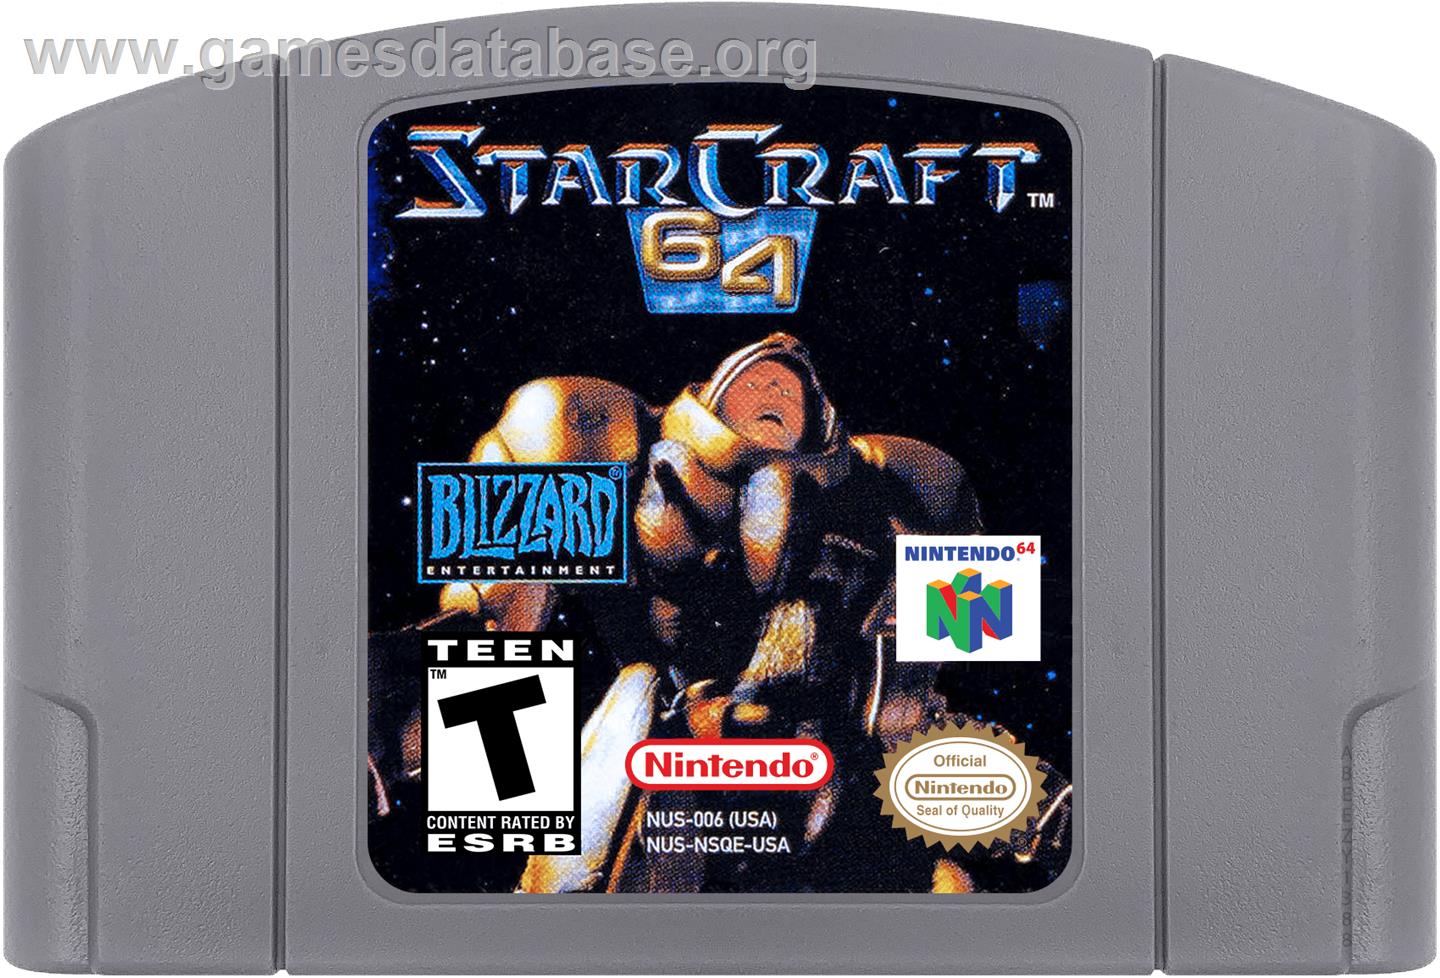 StarCraft 64 - Nintendo N64 - Artwork - Cartridge